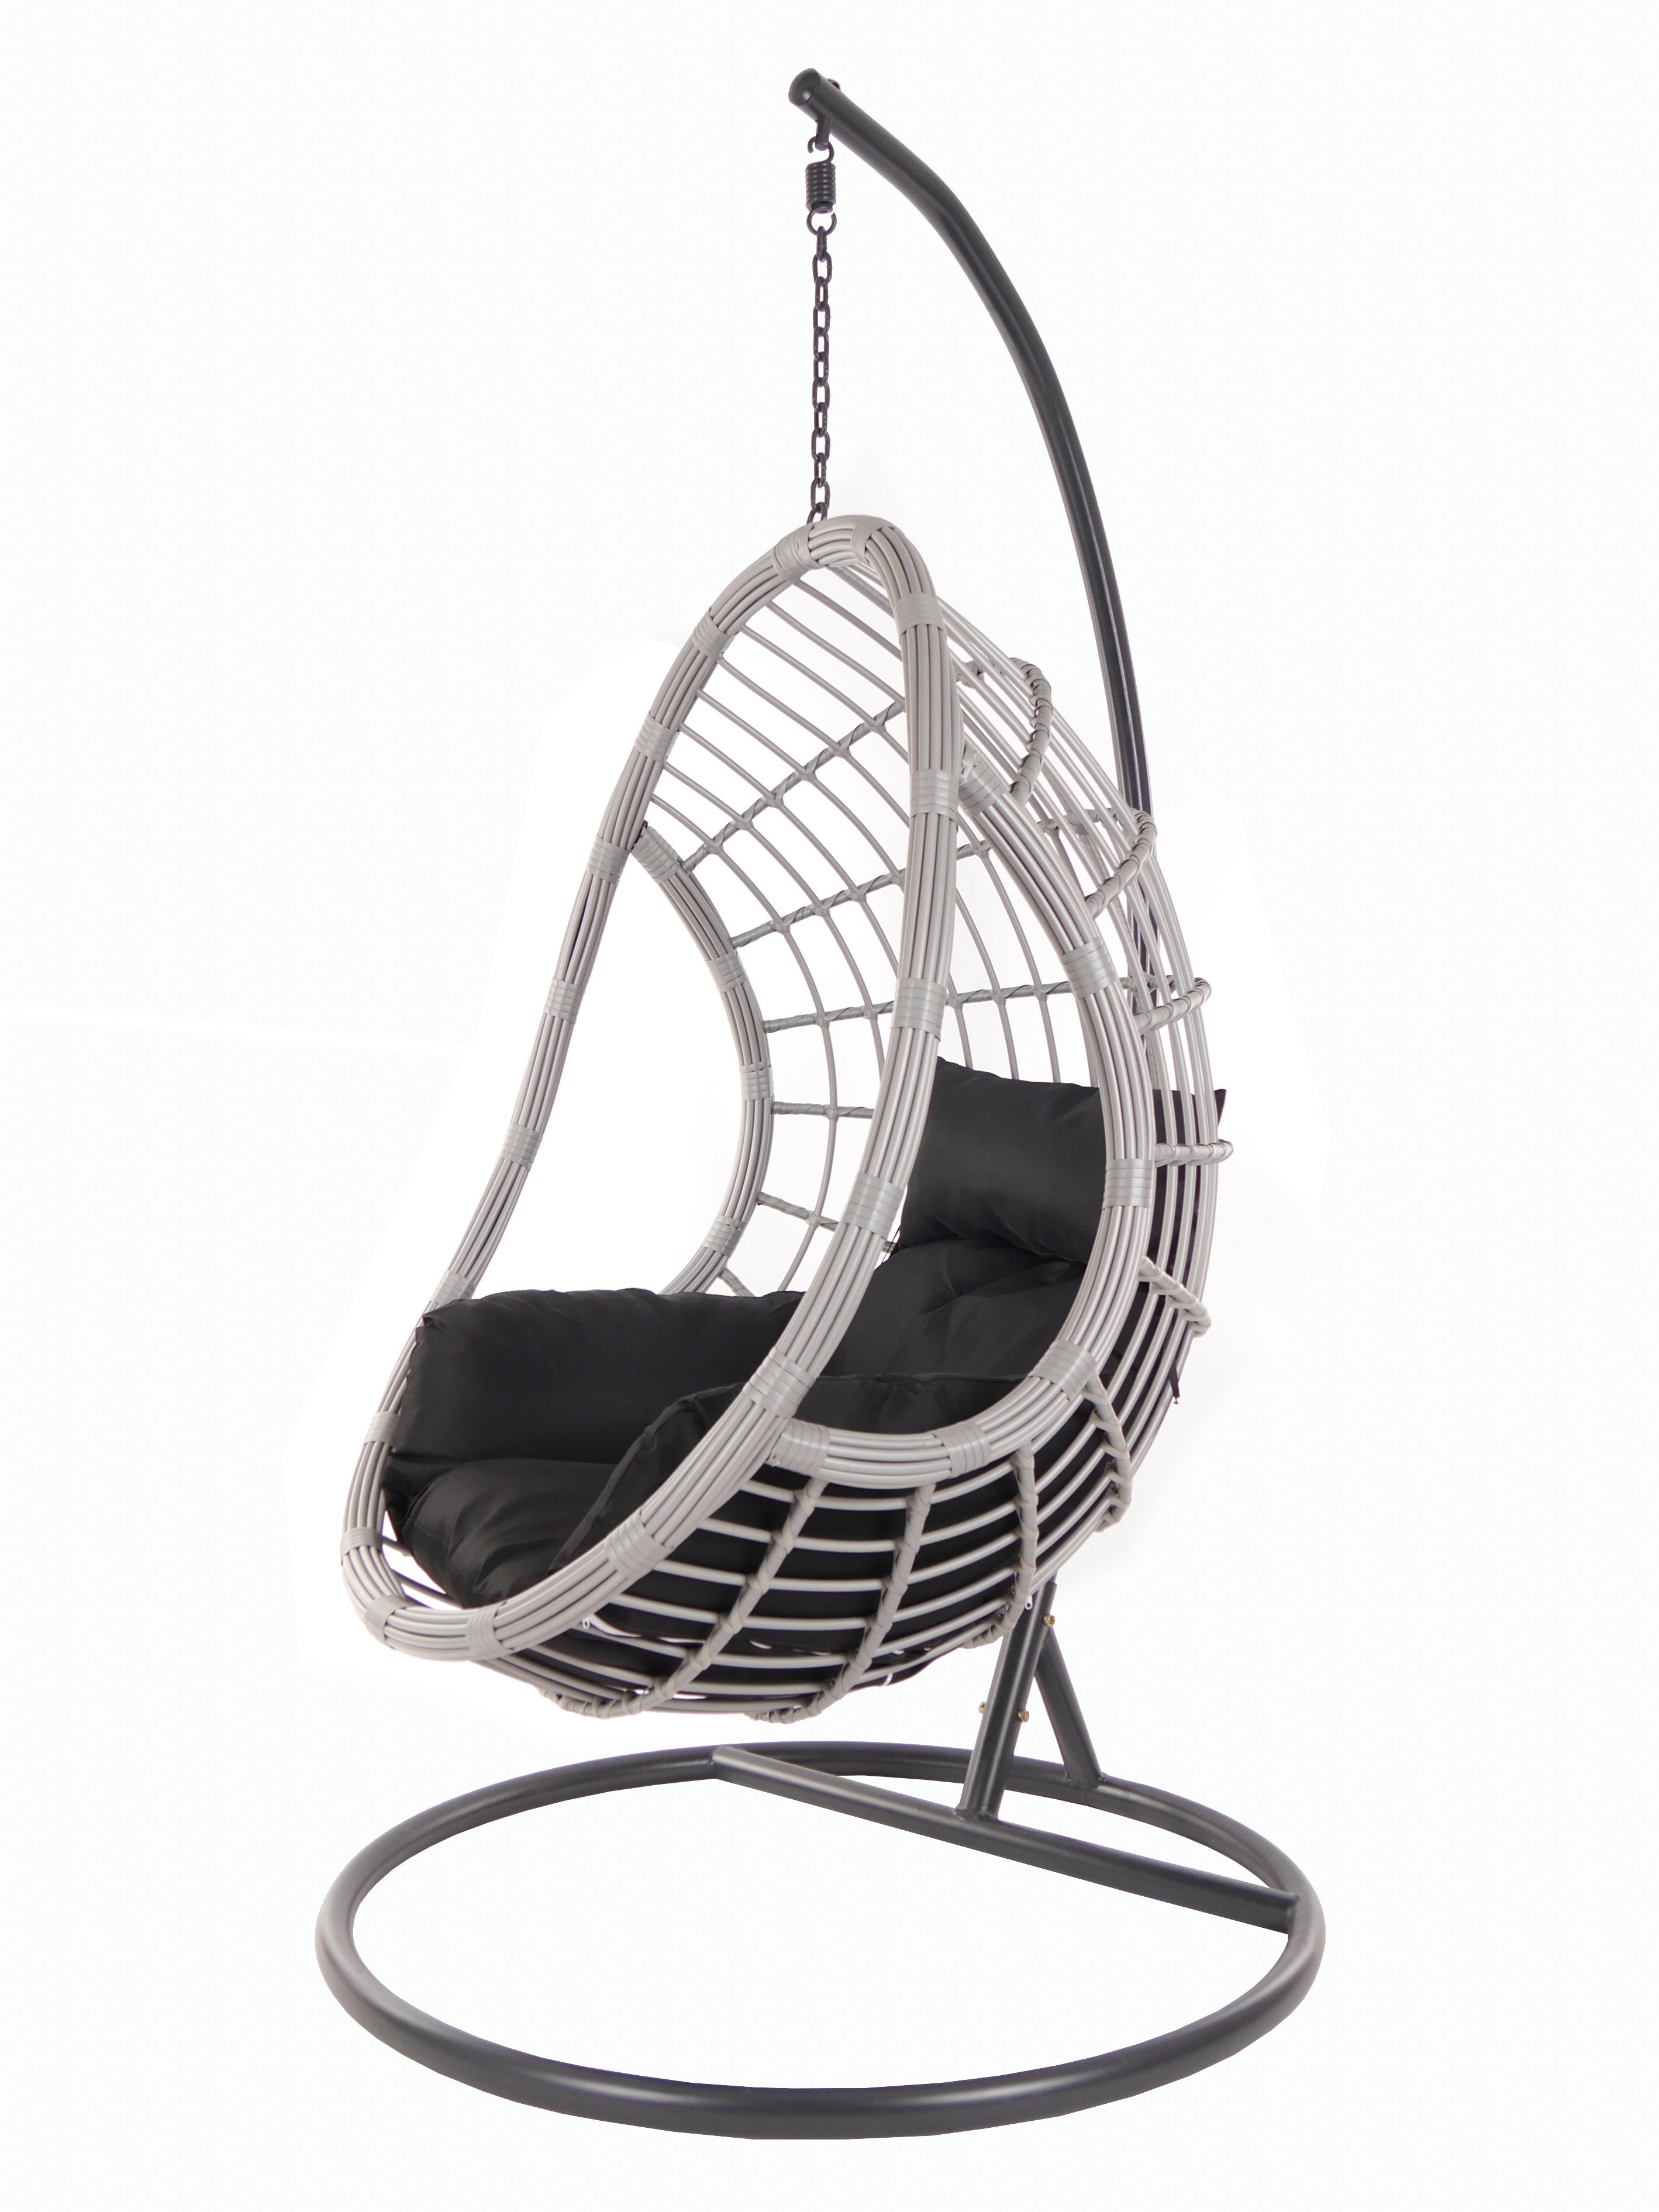 KIDEO Hängesessel PALMANOVA lightgrey, Schwebesessel mit Gestell und Kissen, Swing Chair, Loungemöbel schwarz (9999 black)